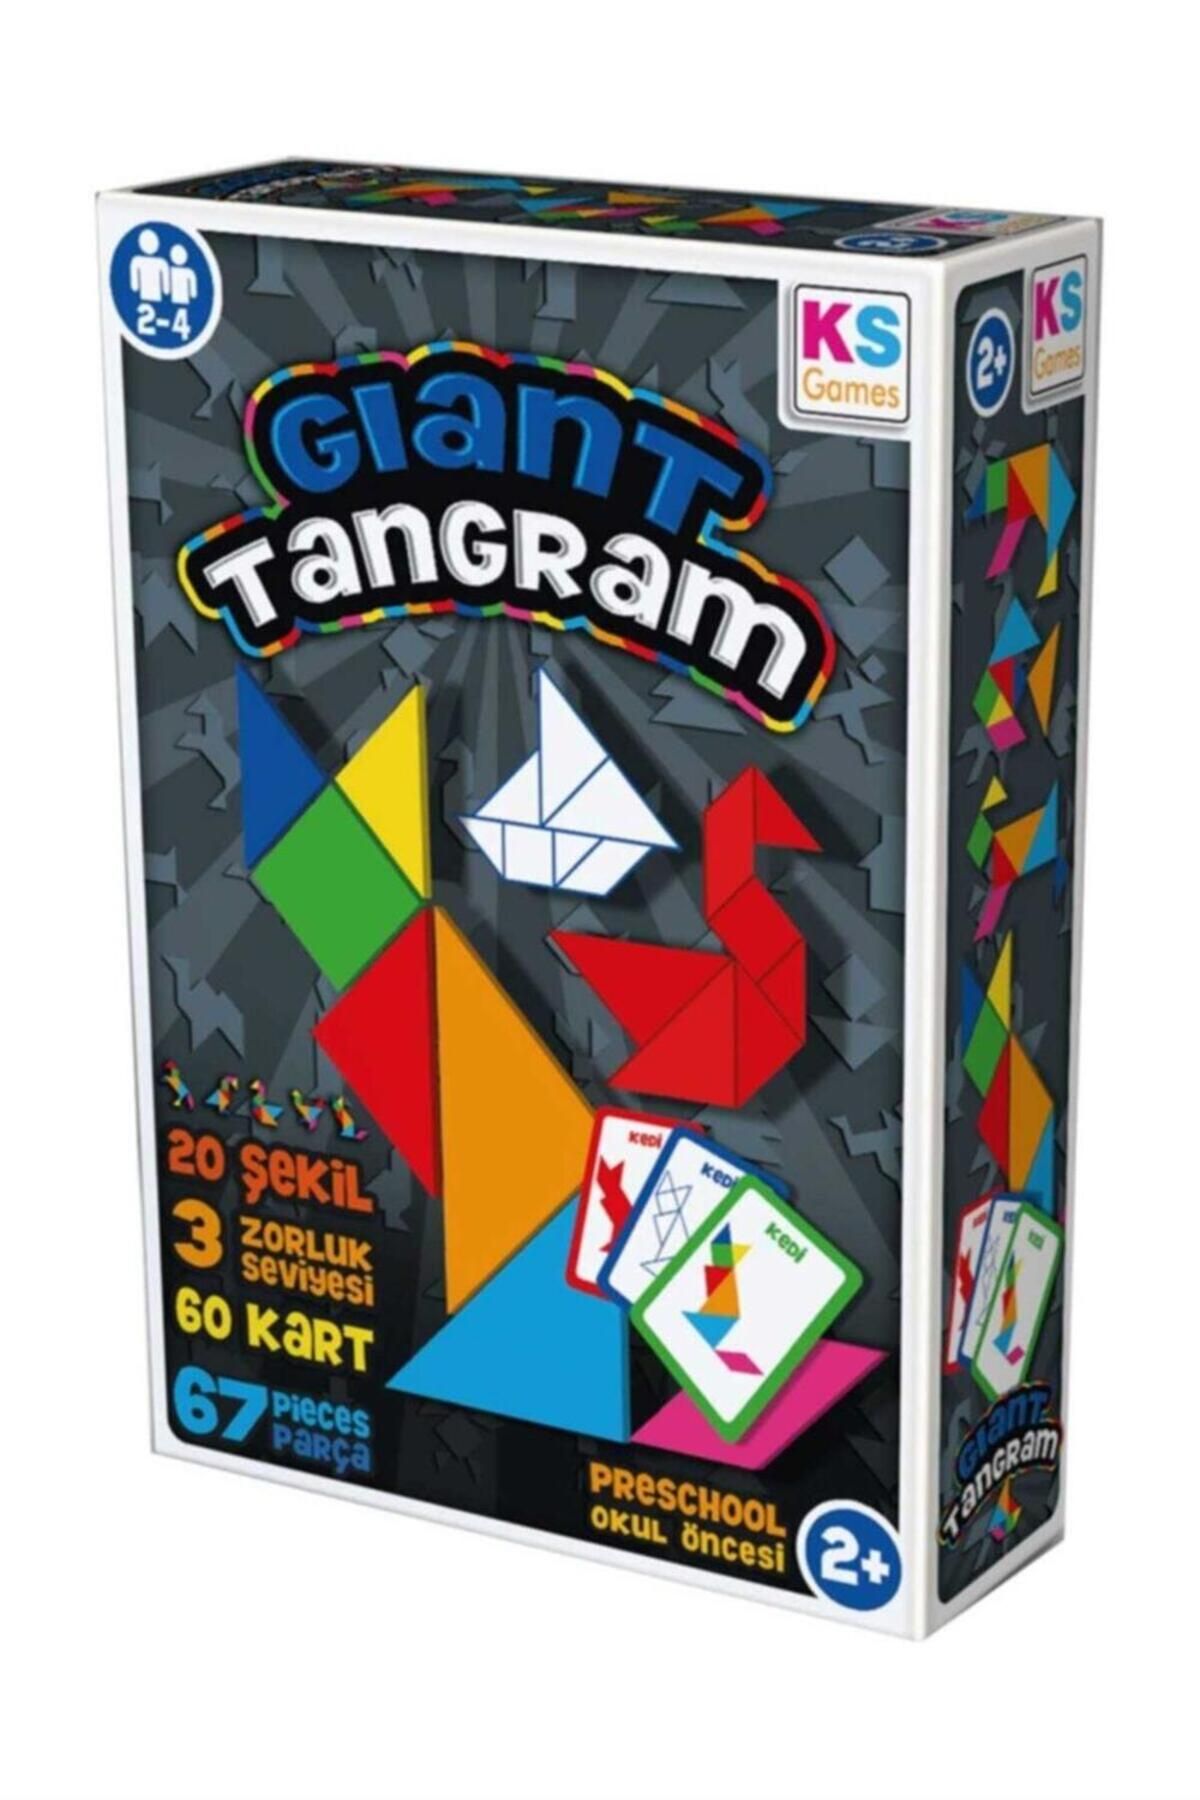 Ks Games Tangram Giant GT239